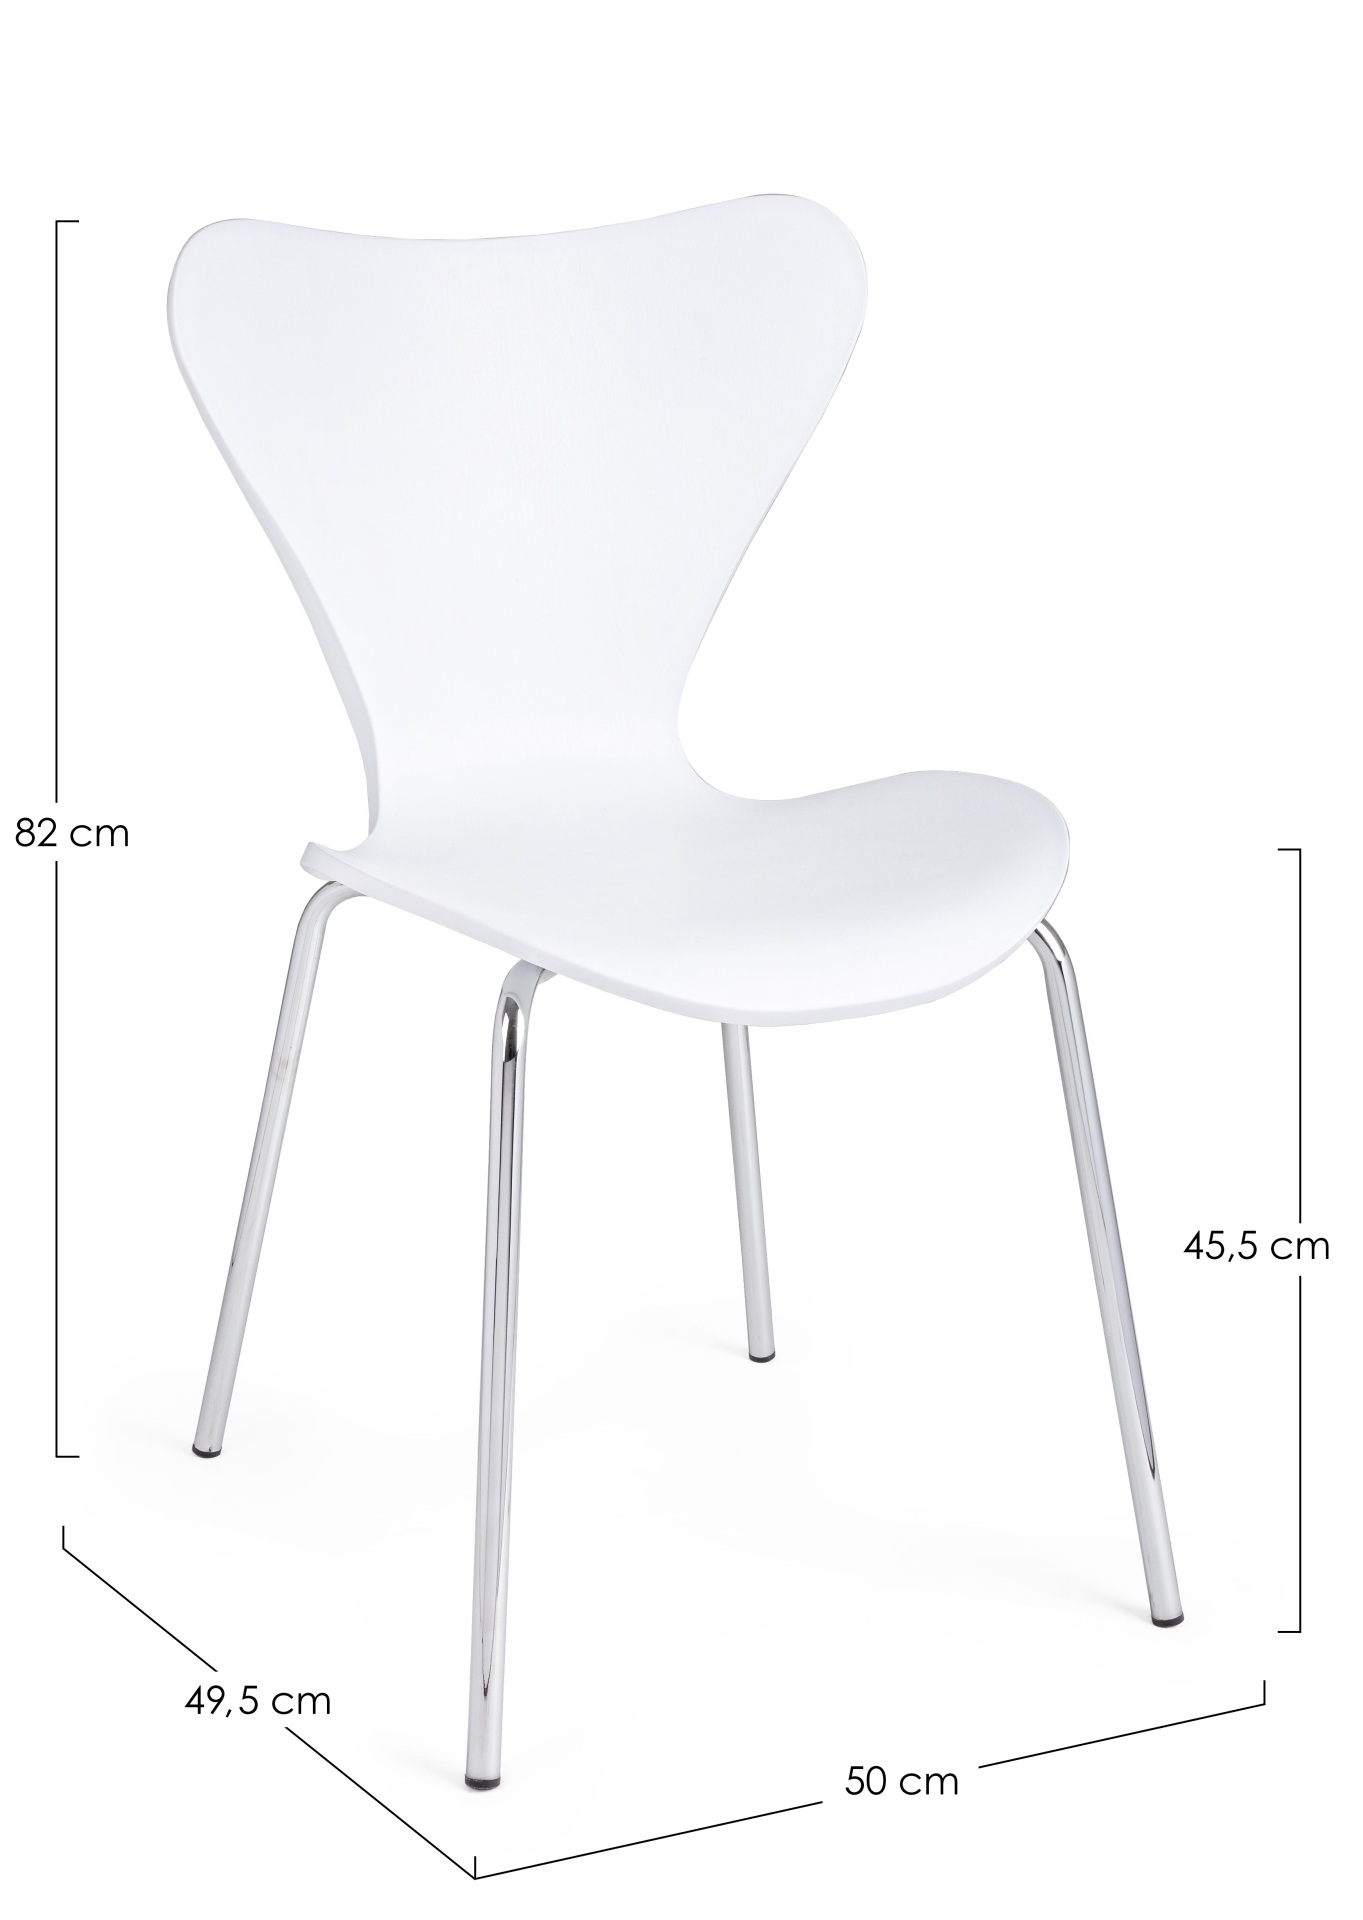 Der Stuhl Tessa überzeugt mit seinem modernem Design. Gefertigt wurde der Stuhl aus Kunststoff, welcher einen weißen Farbton besitzt. Das Gestell ist aus Metall und ist in einer silbernen Farbe. Die Sitzhöhe beträgt 45 cm.